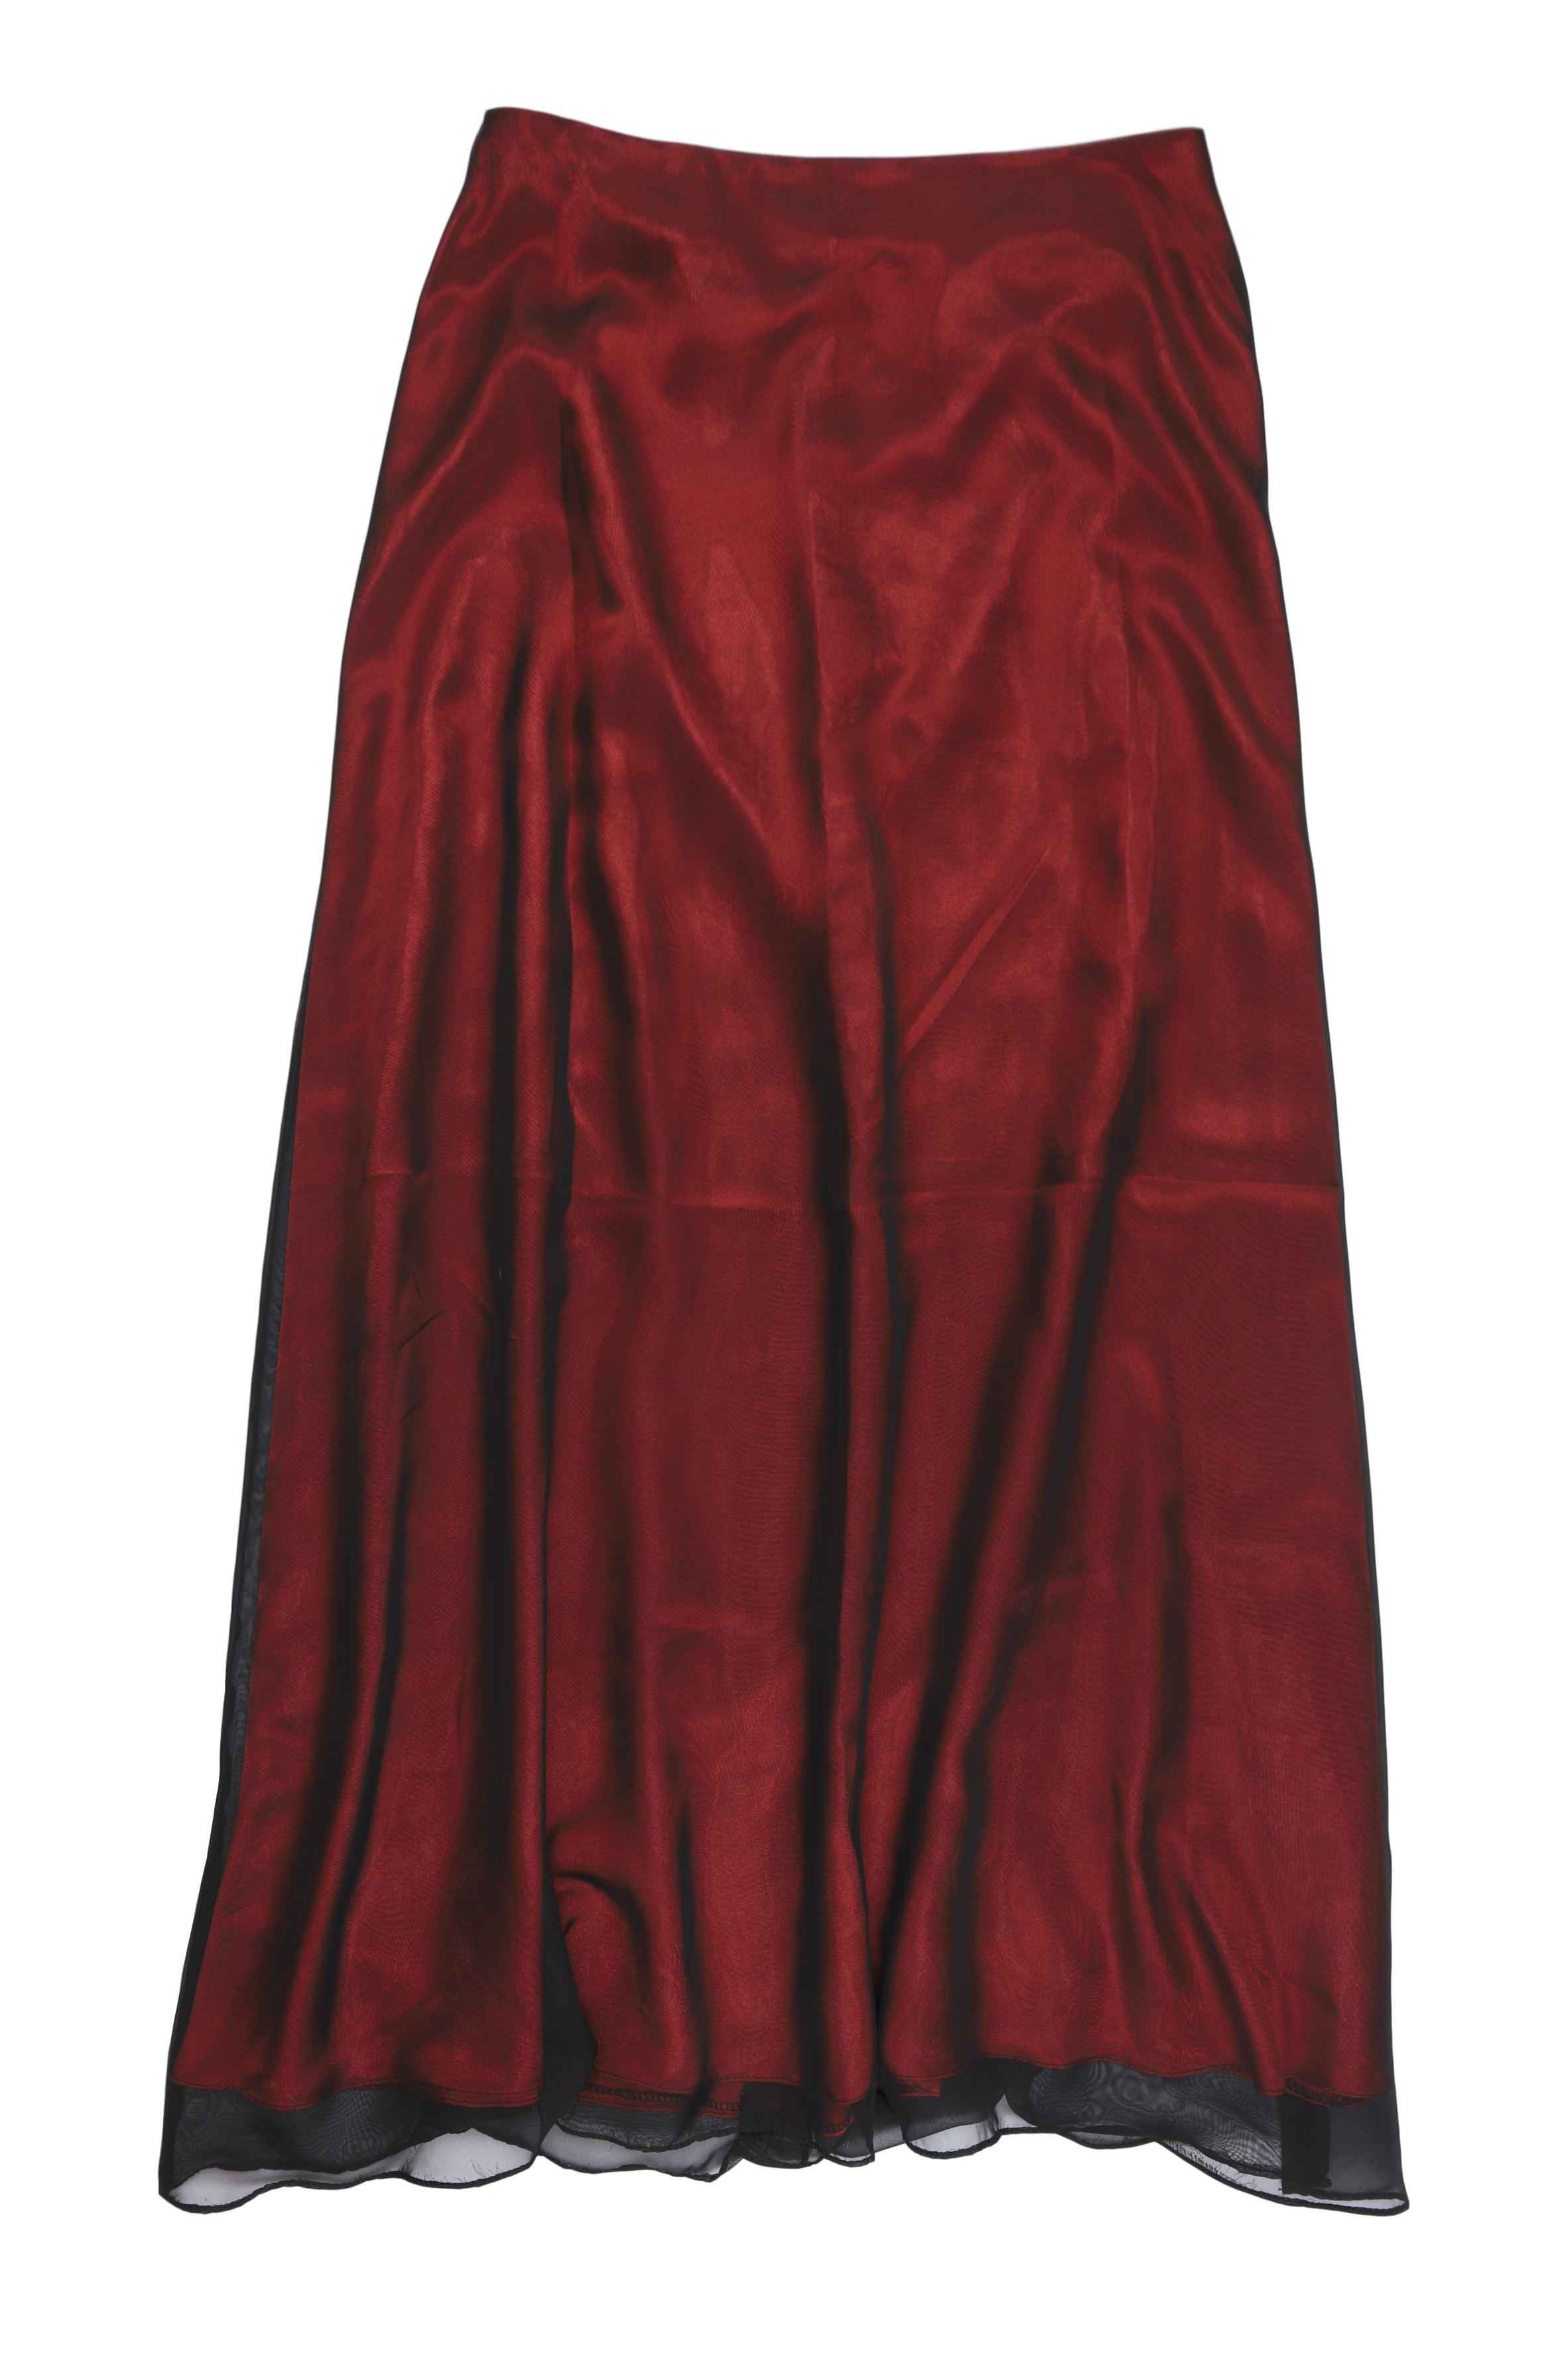 Falda larga de gasa negra y forro rojo satinado, línea A, con cierre posterior. Cintura 78 cm.